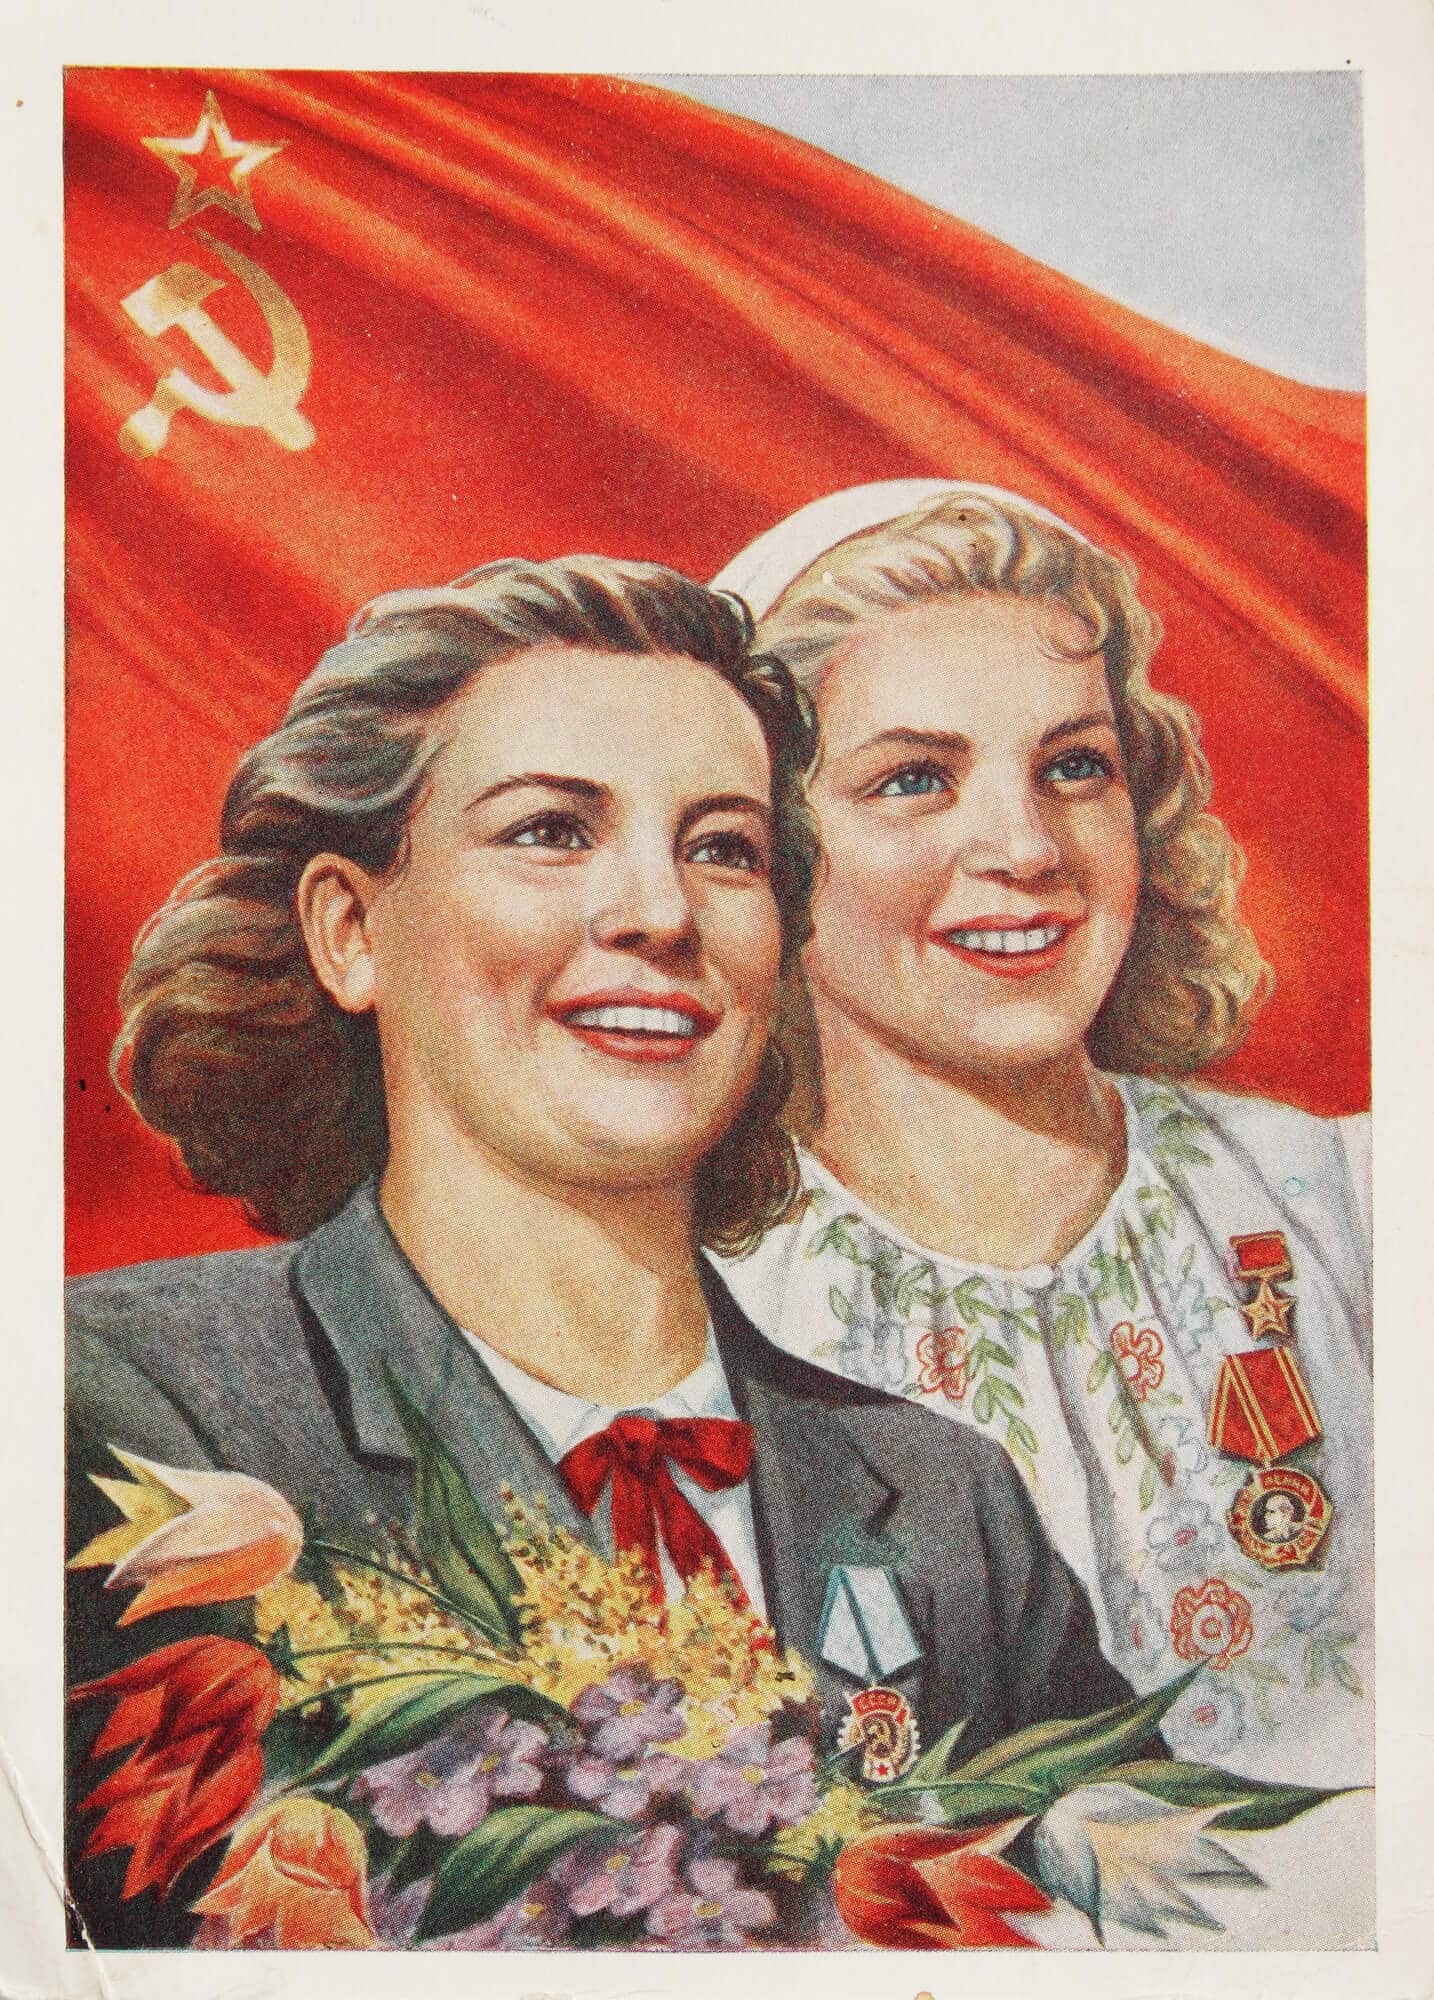 גלויה סובייטית לציון אחד במאי.  <a href="https://depositphotos.com. ">איור: depositphotos.com</a>